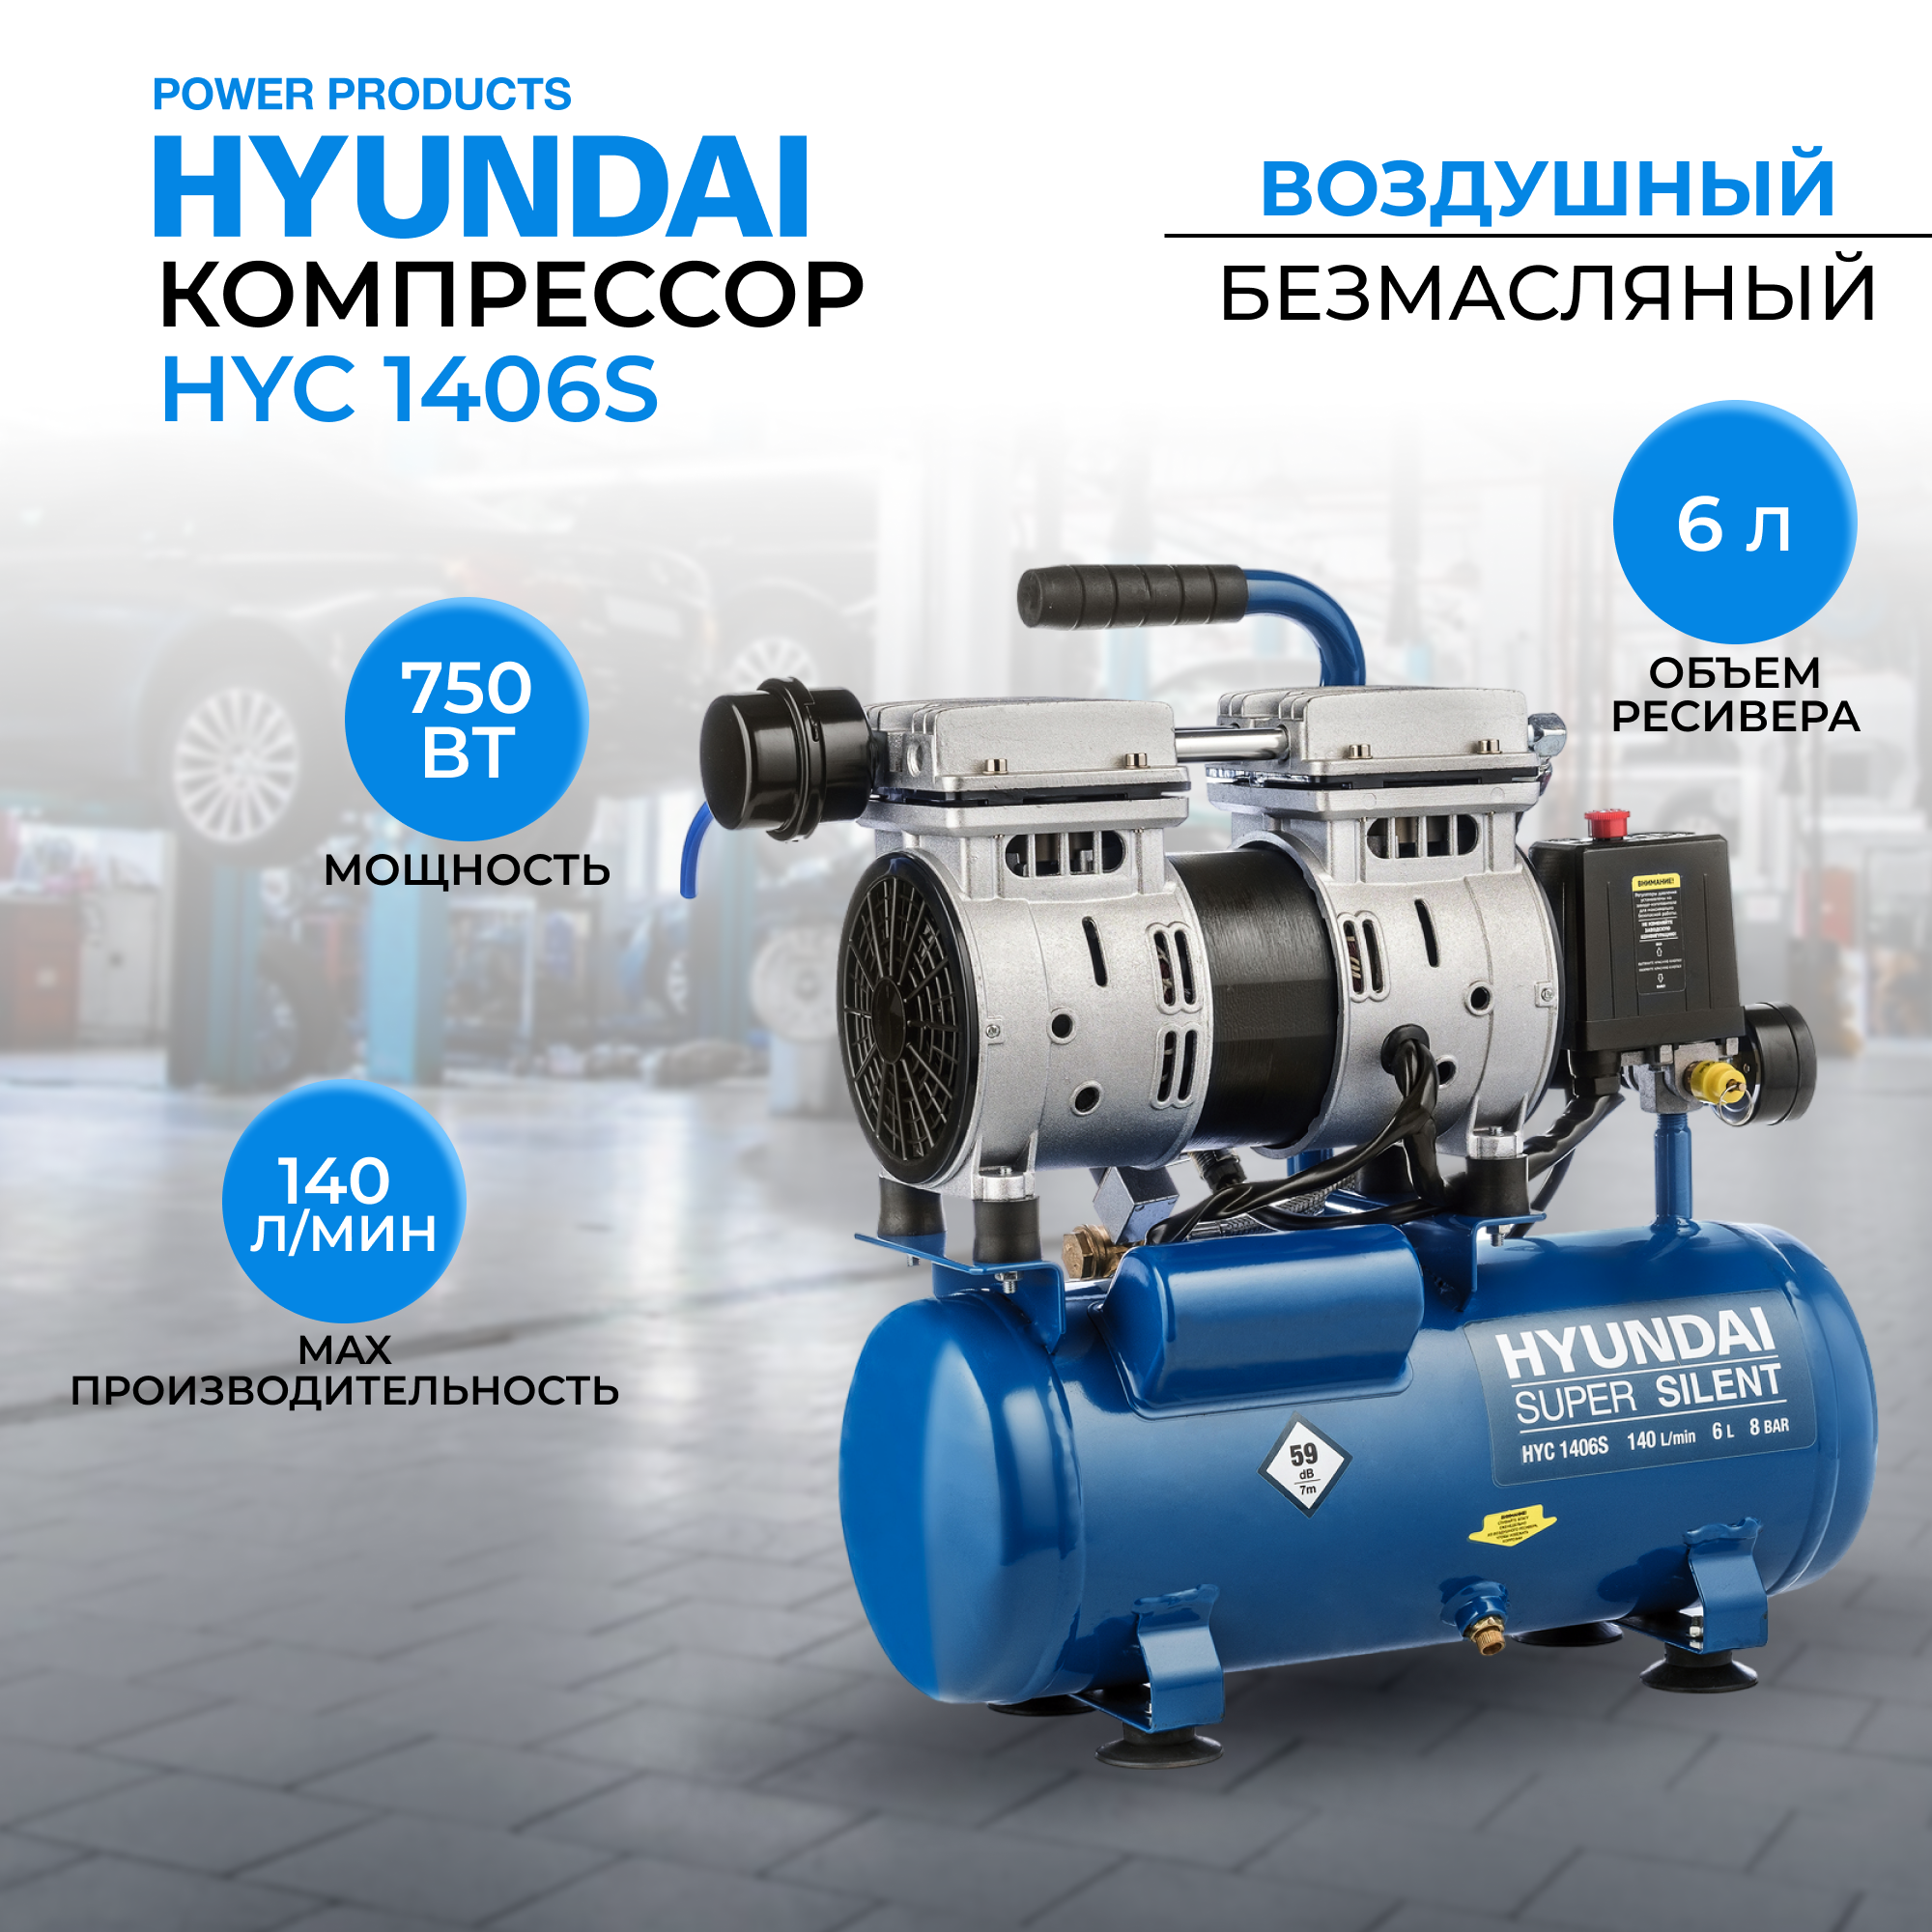 Воздушный поршневой компрессор Hyundai HYC 1406S безмасляный (140 л/мин, 750Вт, 8 бар) компрессор воздушный безмасляный eco ae 10 of1